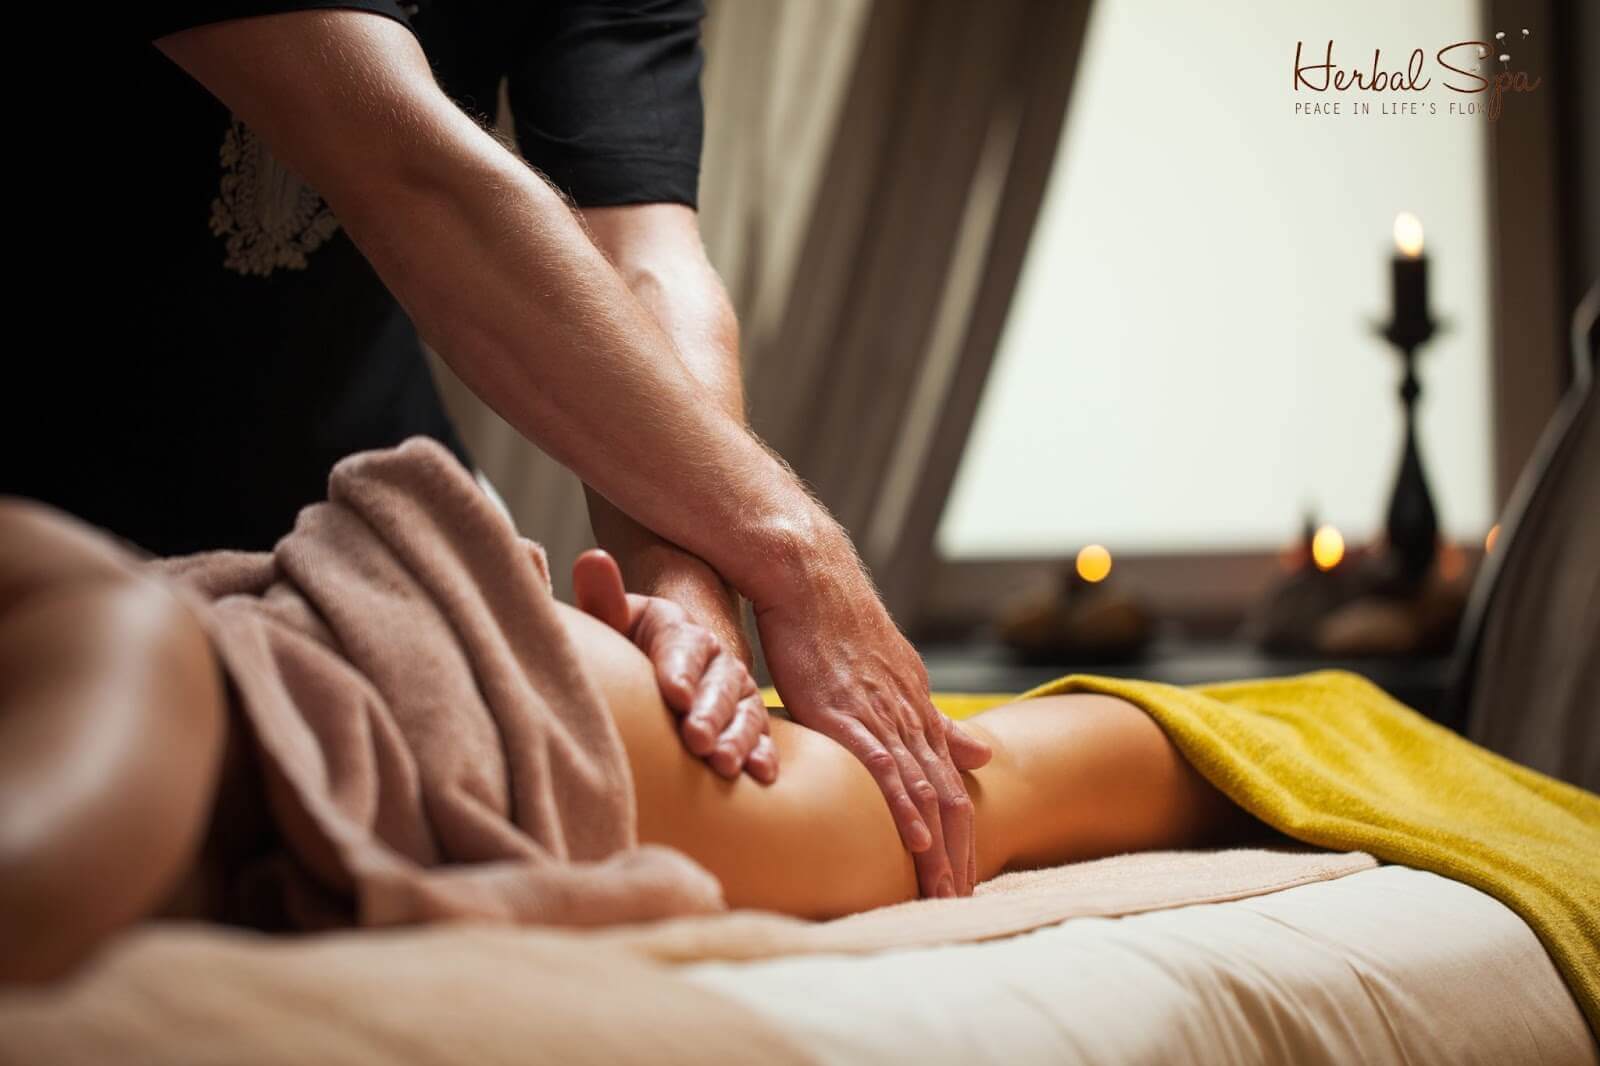 Lực massage kết hợp với hơi ấm từ nến giúp giải tỏa đau nhức